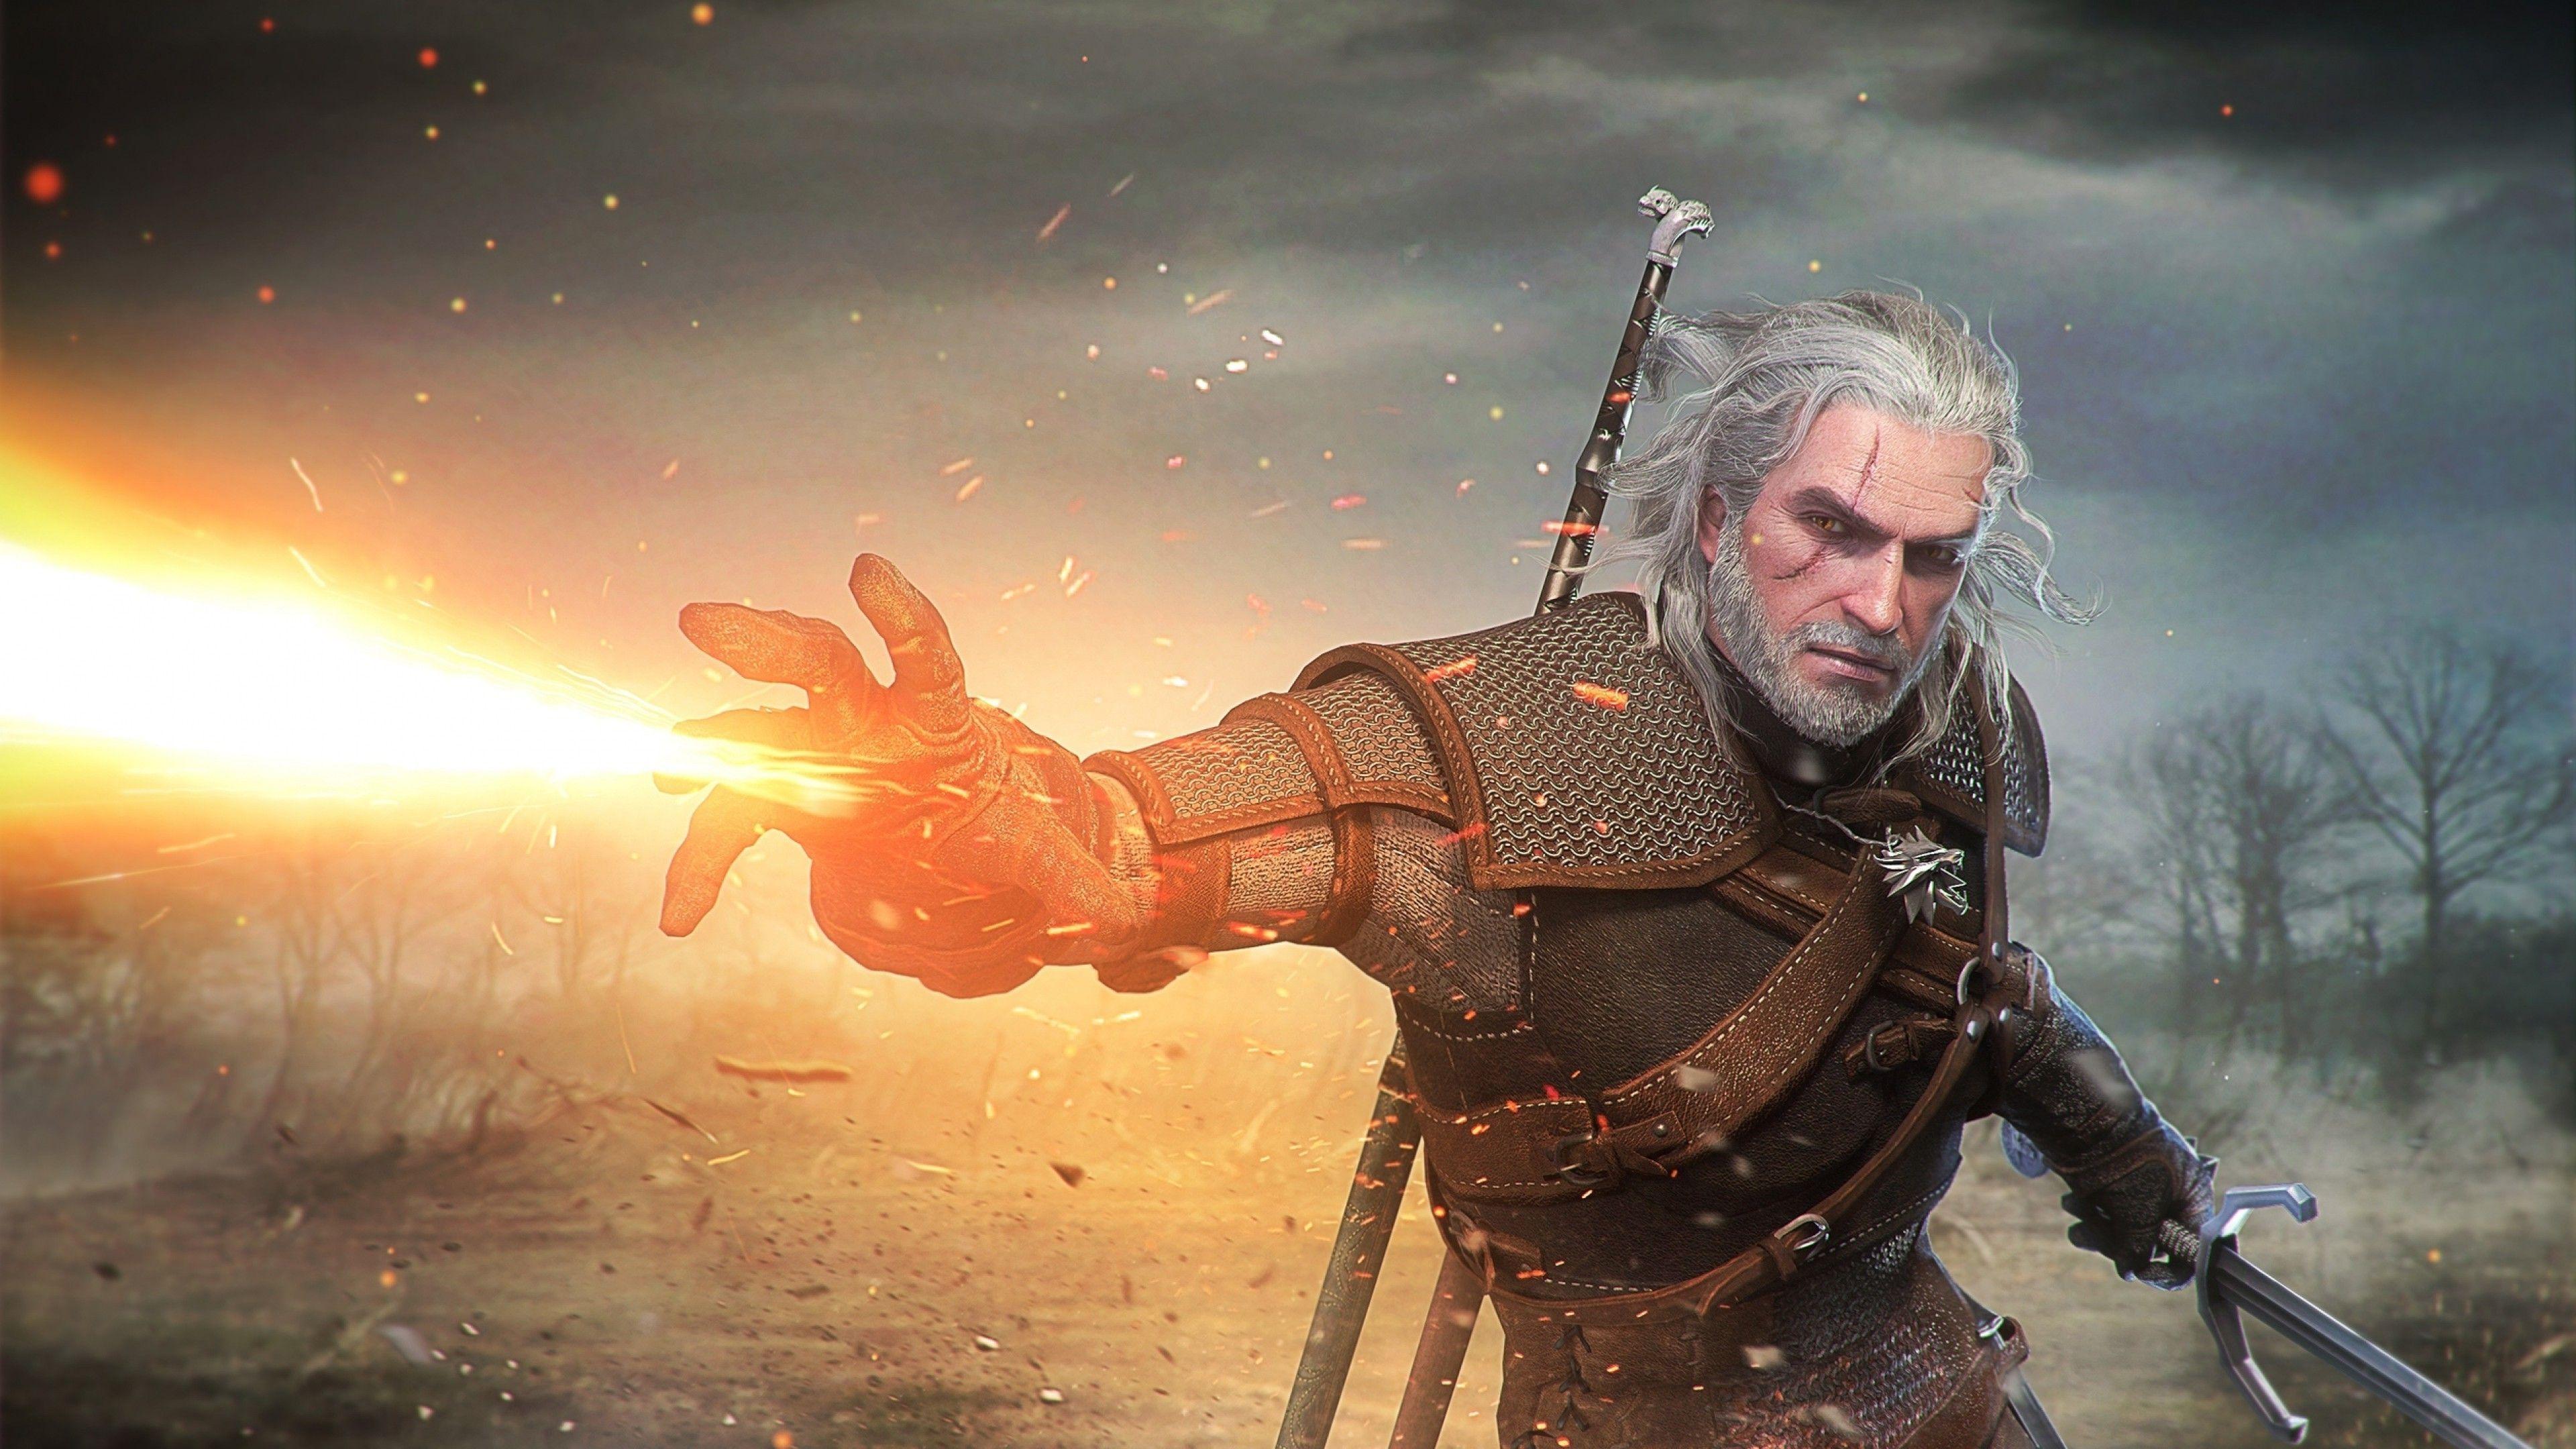 Wallpaper, video games, sword, The Witcher 3 Wild Hunt, Geralt